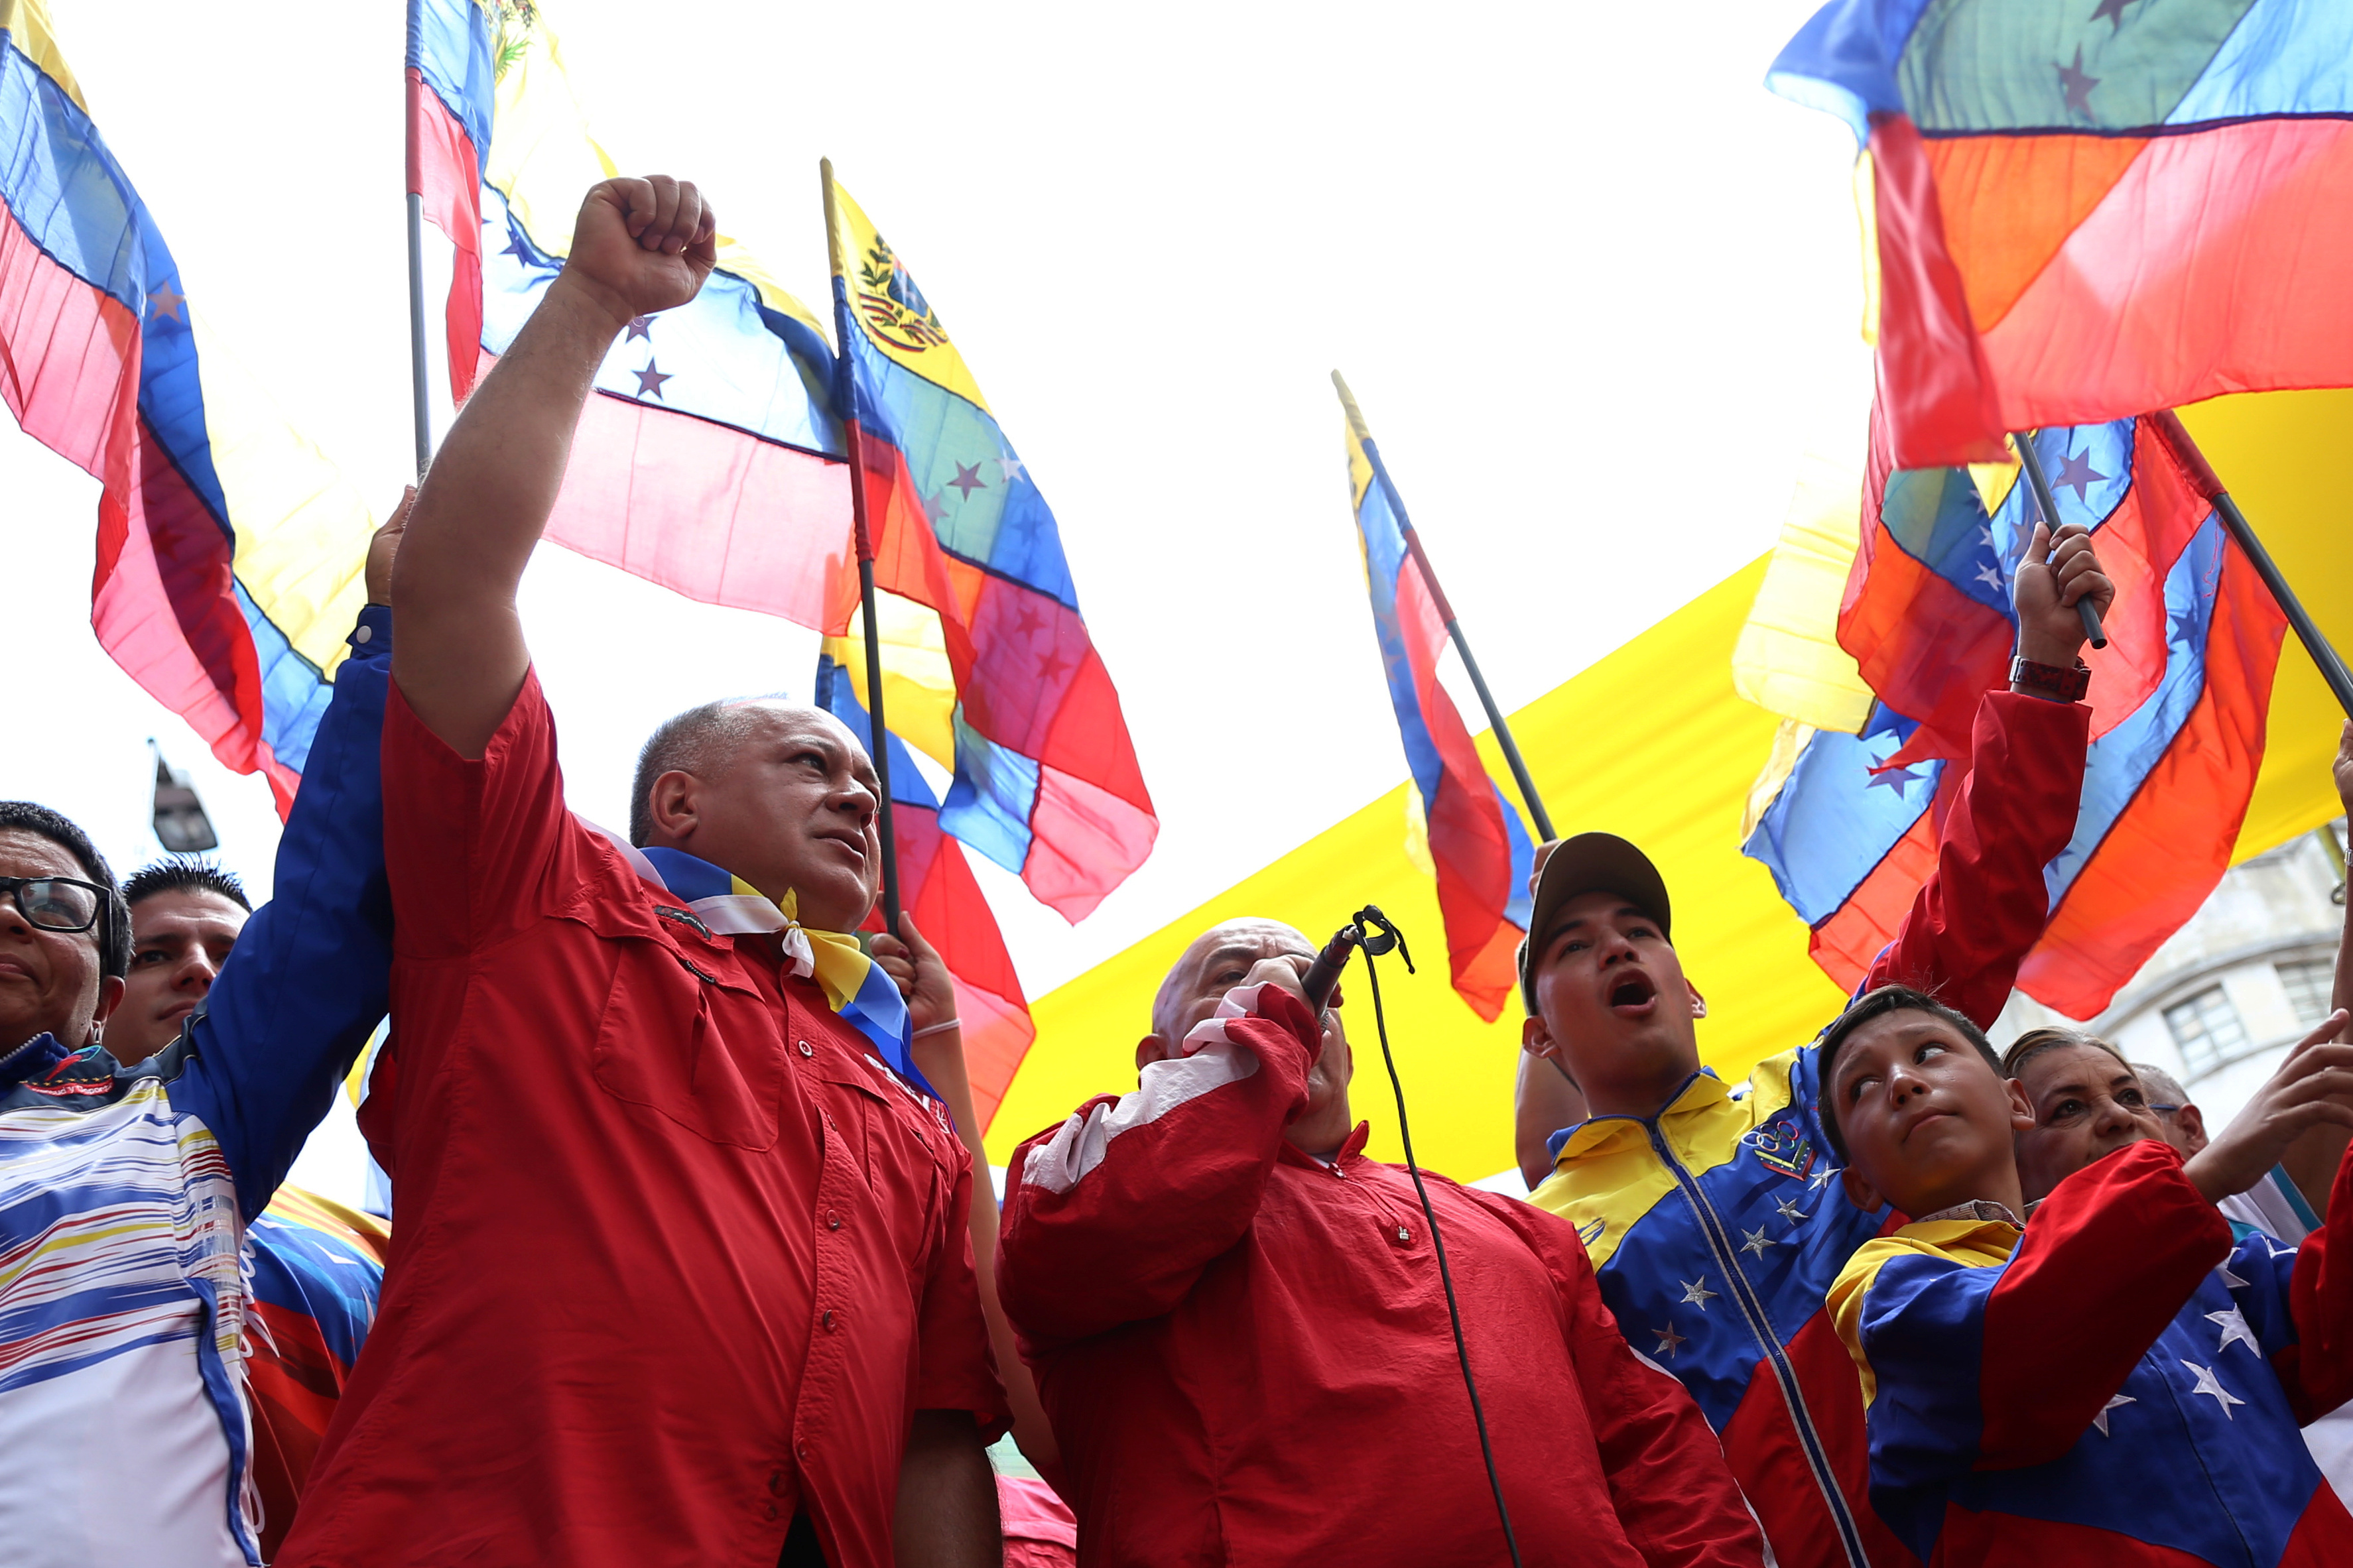 El régimen de Maduro eleva el tono tras la ruptura del diálogo con la oposición